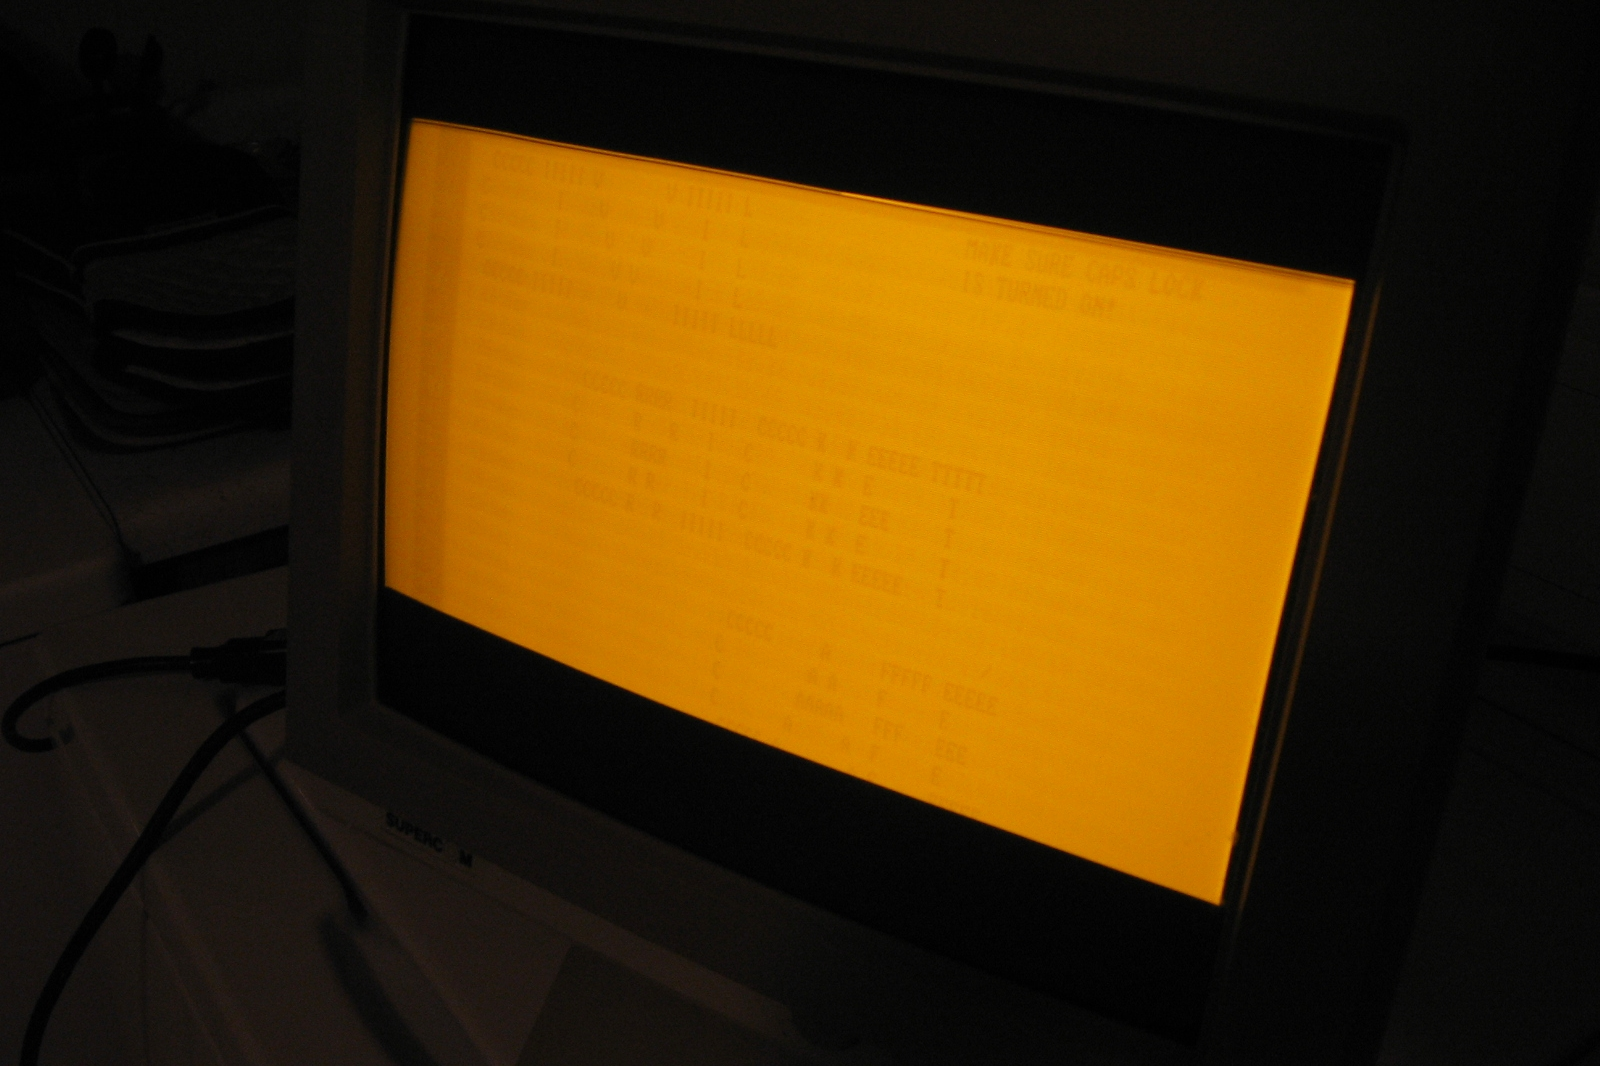 Queima de fósforo (“queima de tela”) visível em um monitor de computador CRT monocromático âmbar.